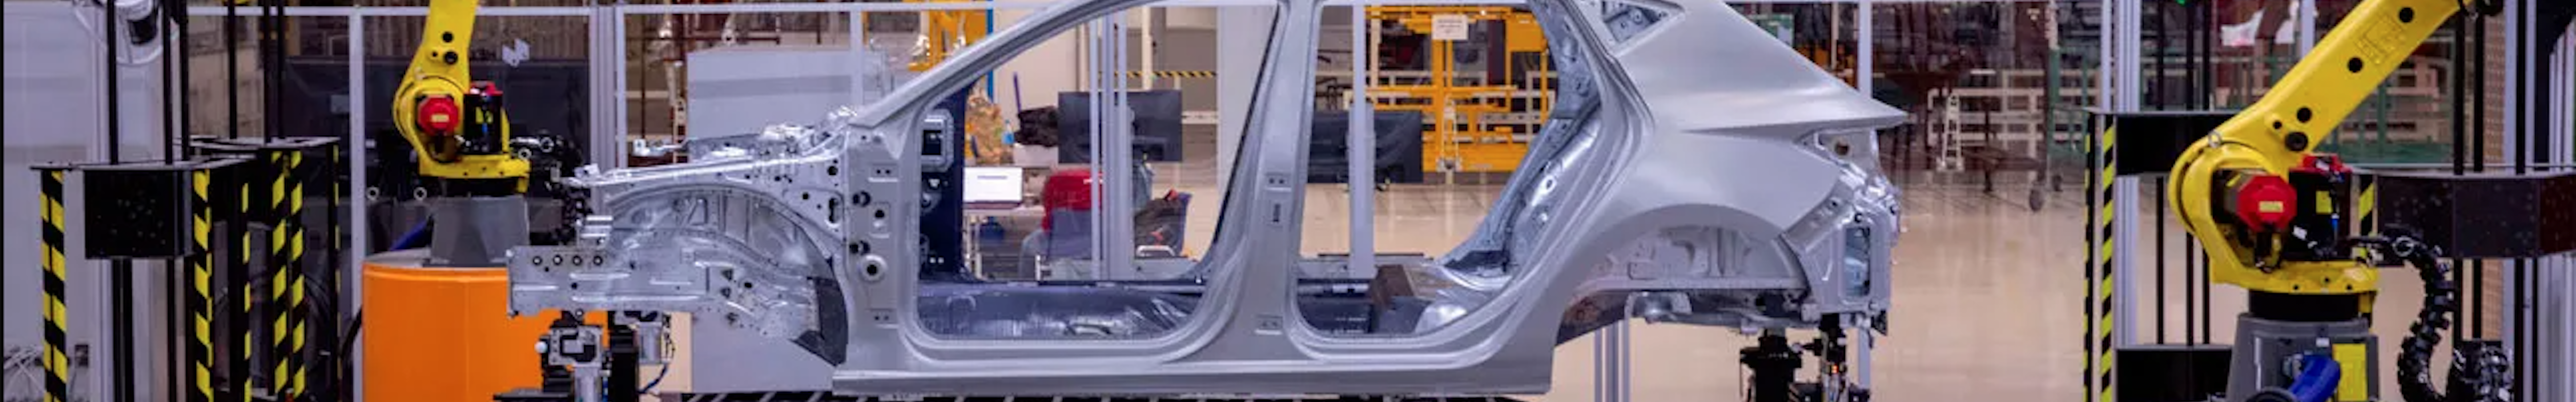 SEAT Acandra, el nuevo modelo eléctrico de la gama, se fabricará en Martorell en 2025